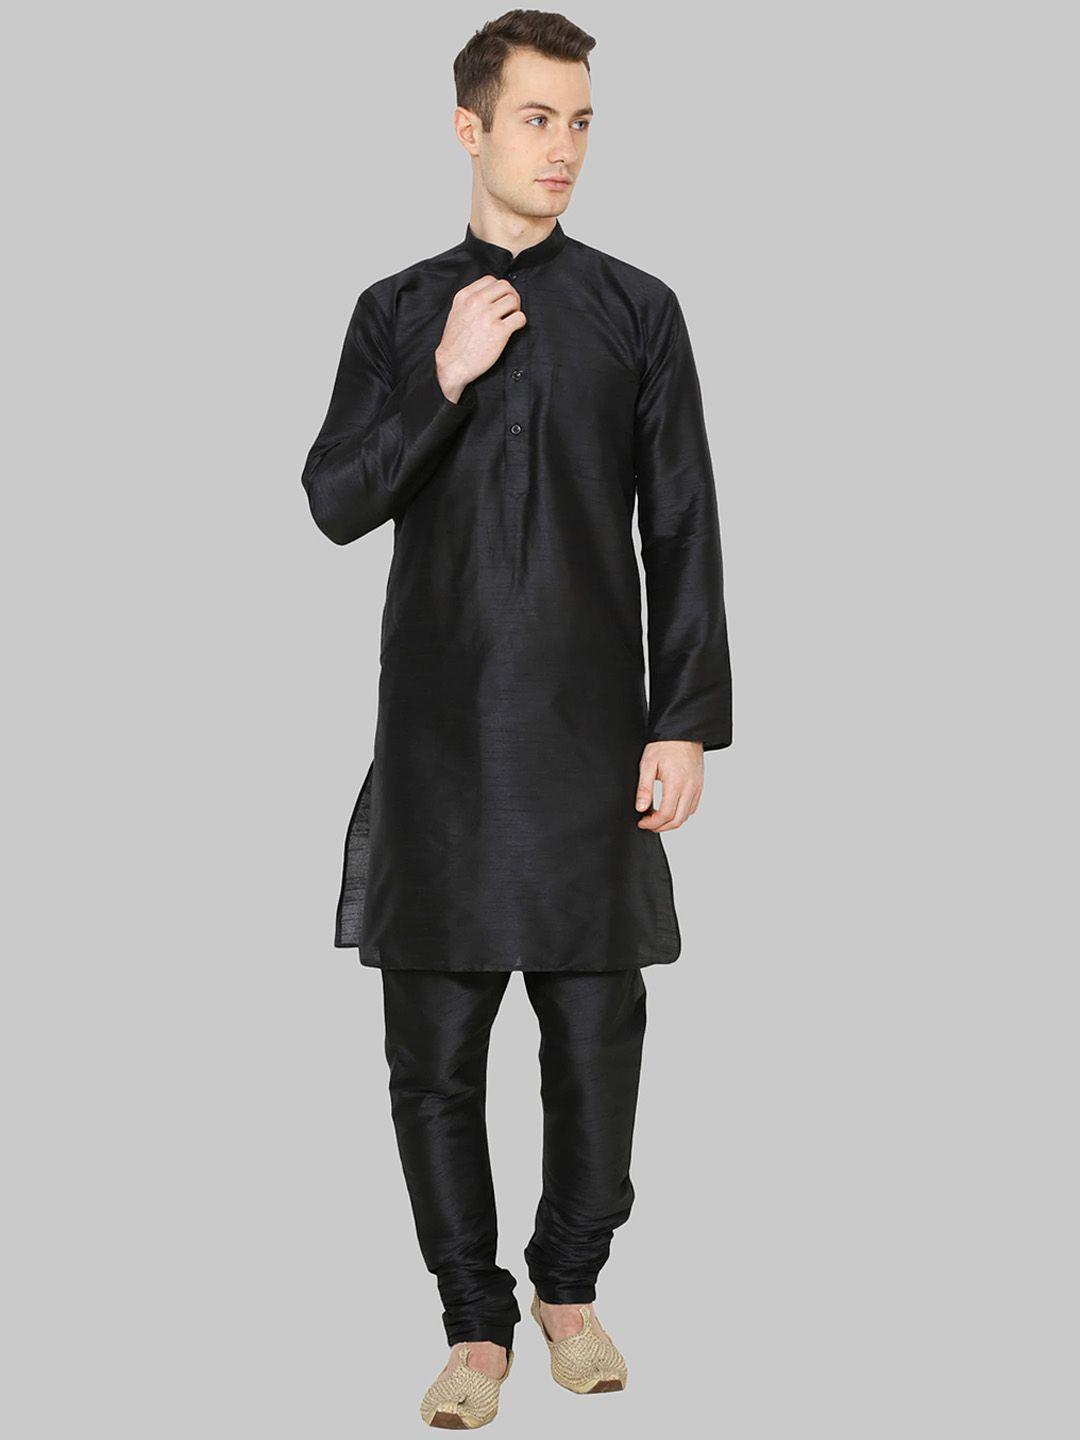 royal kurta men black solid mandarin collar long sleeves dupion silk kurta with churidar